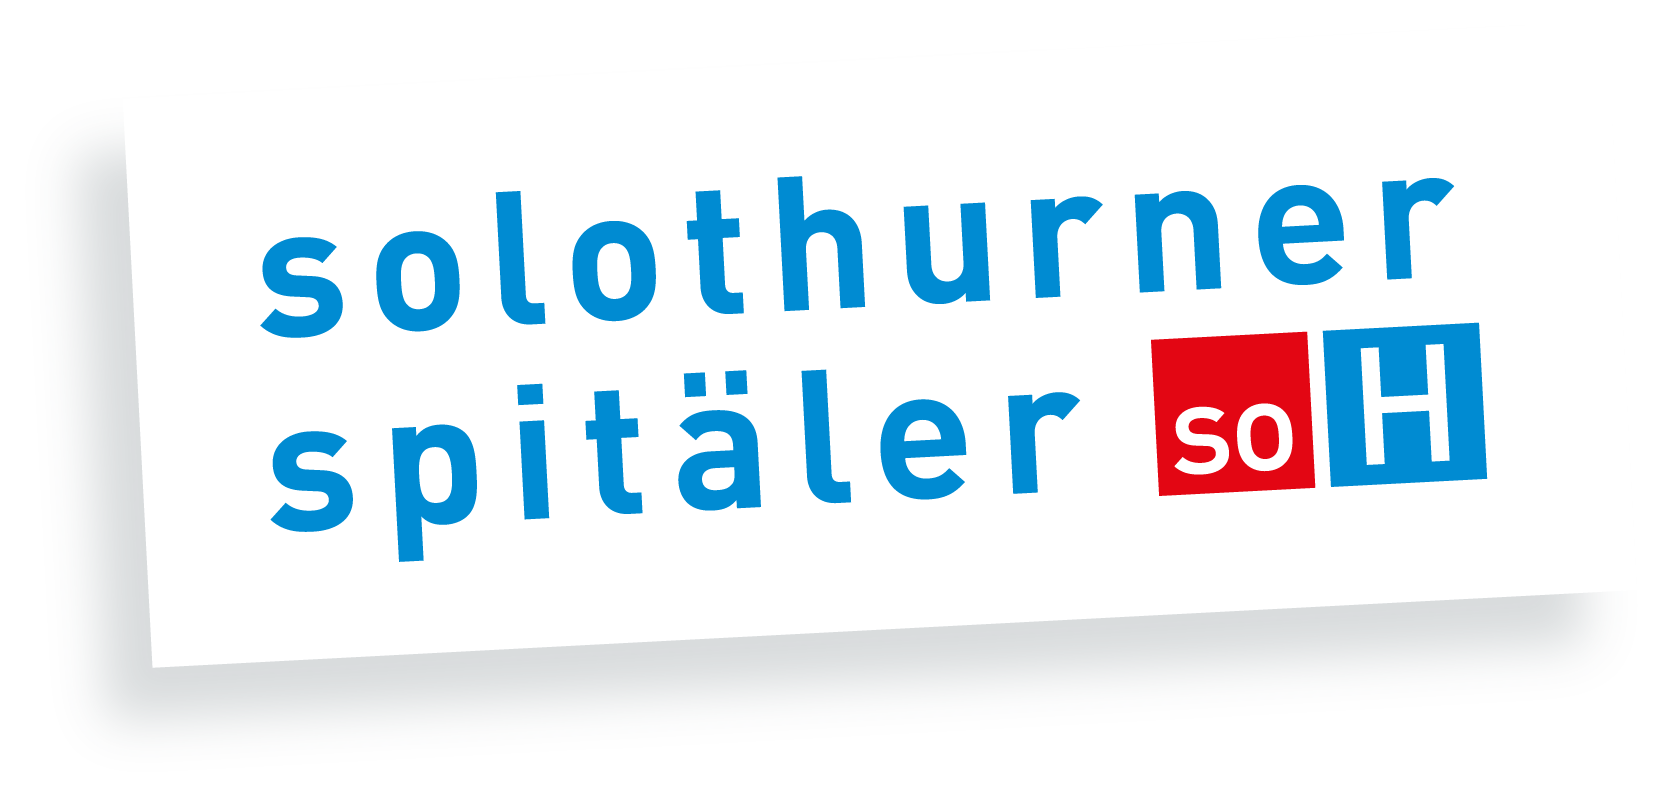 Referenz Healthcare Solothurner Spitäler